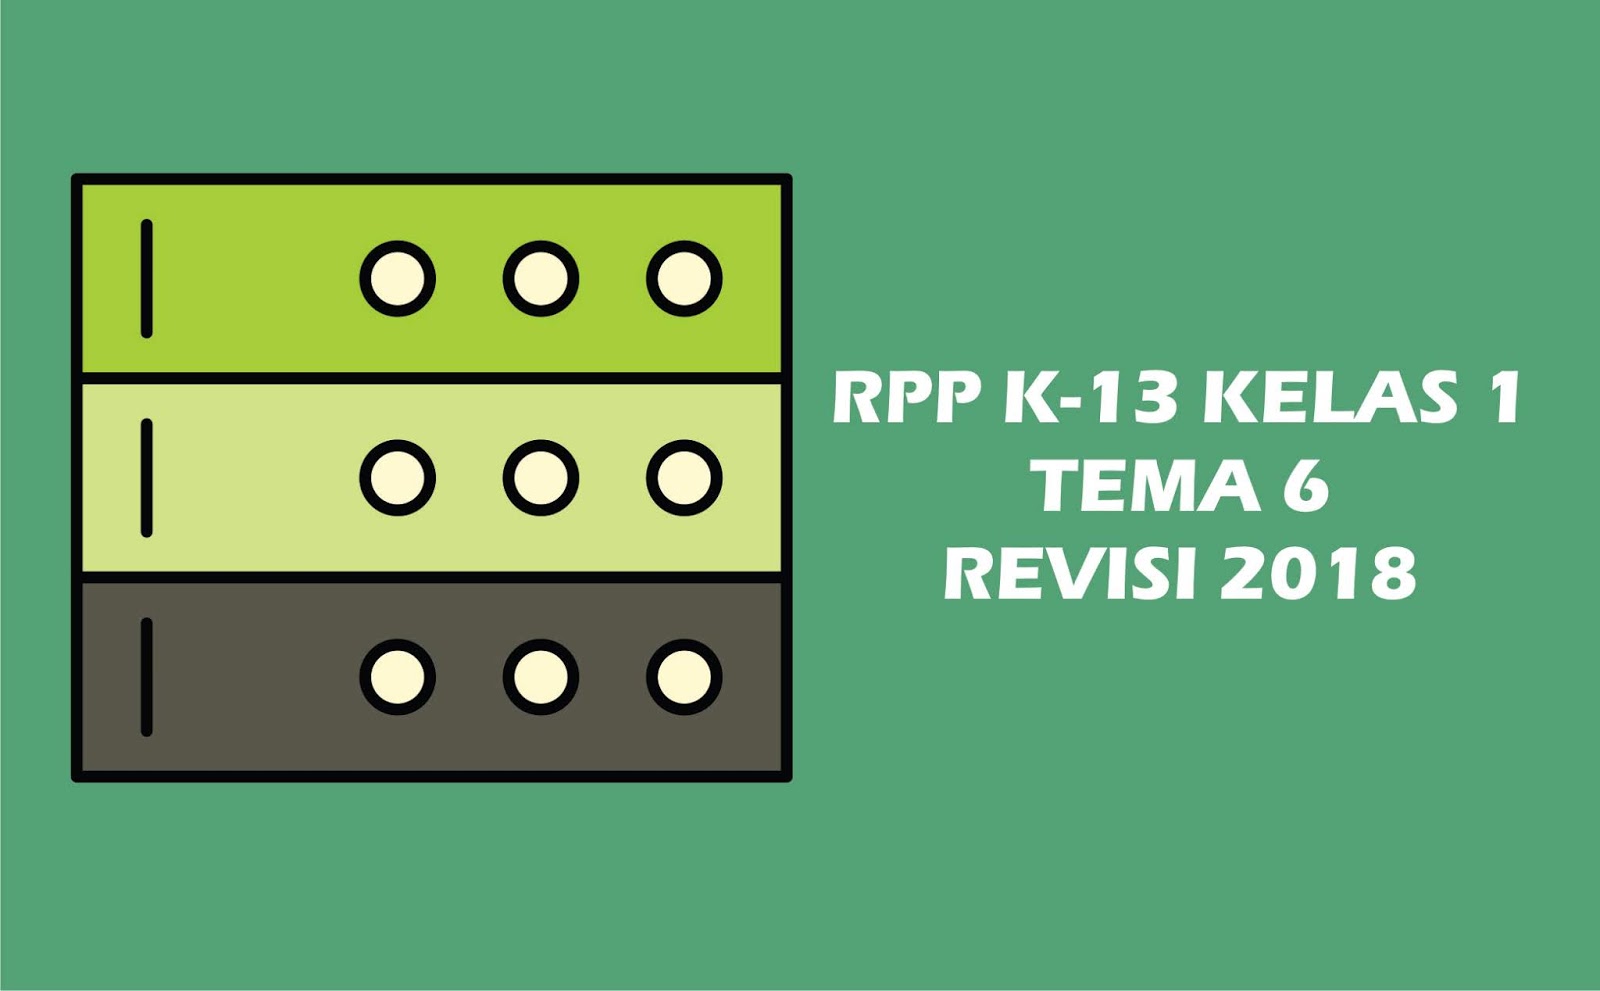 Download Gratis RPP Kelas I Tema 6 K 13 Revisi 2018